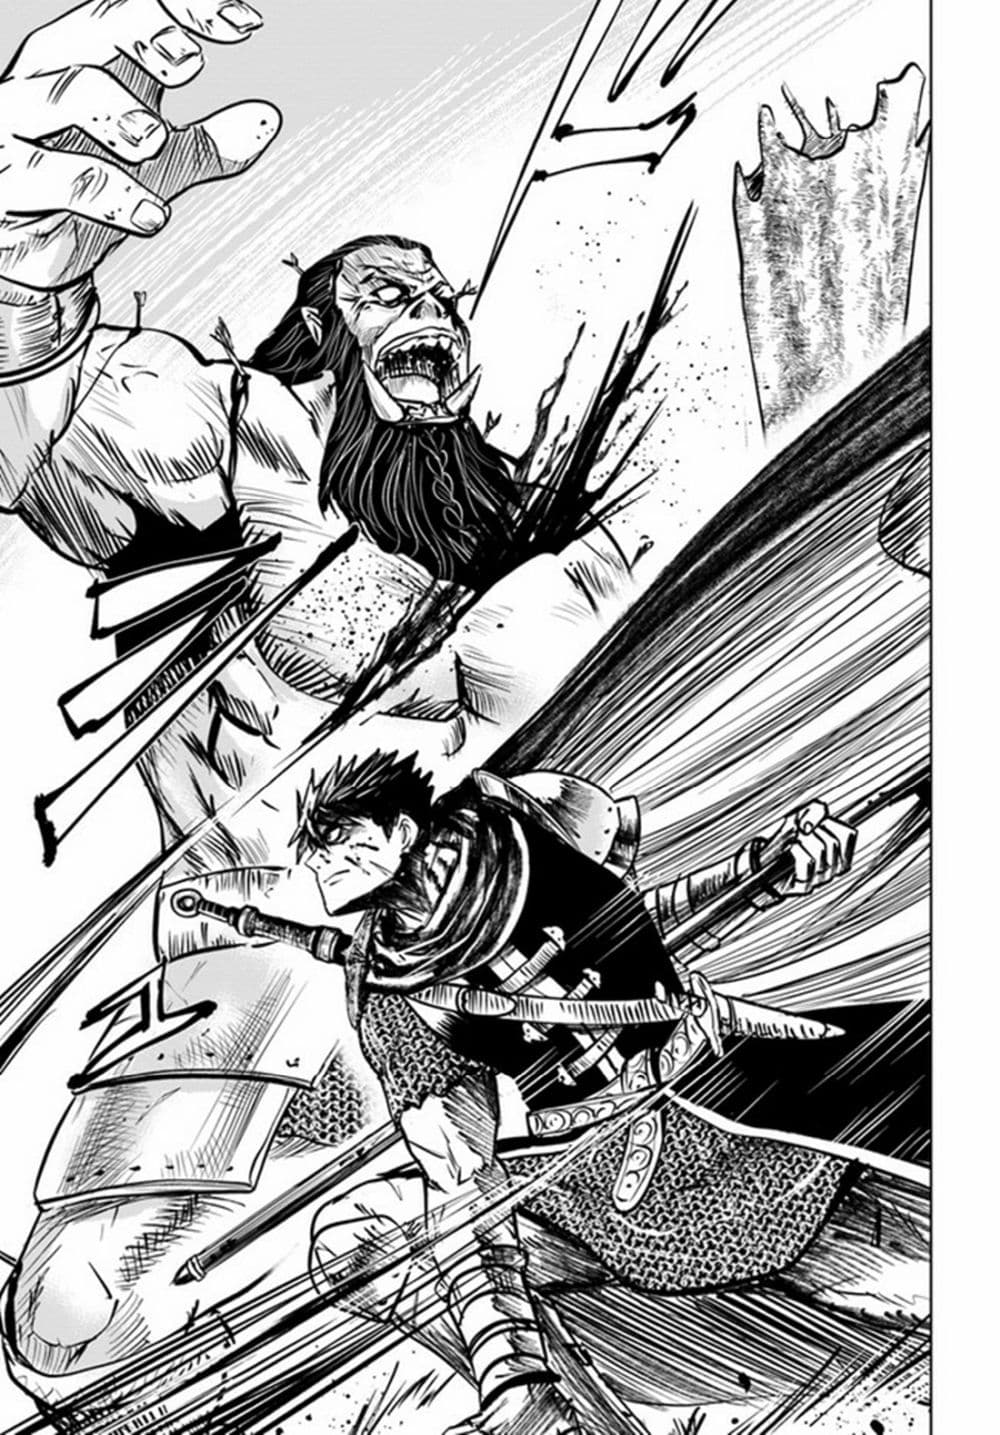 Oukoku e Tsuzuku Michi dorei Kenshi no Nariagari Eiyutan (Haaremu Raifu) - Road to the Kingdom Slave Swordsman the Rise of Heroes - Harem Life 26-26